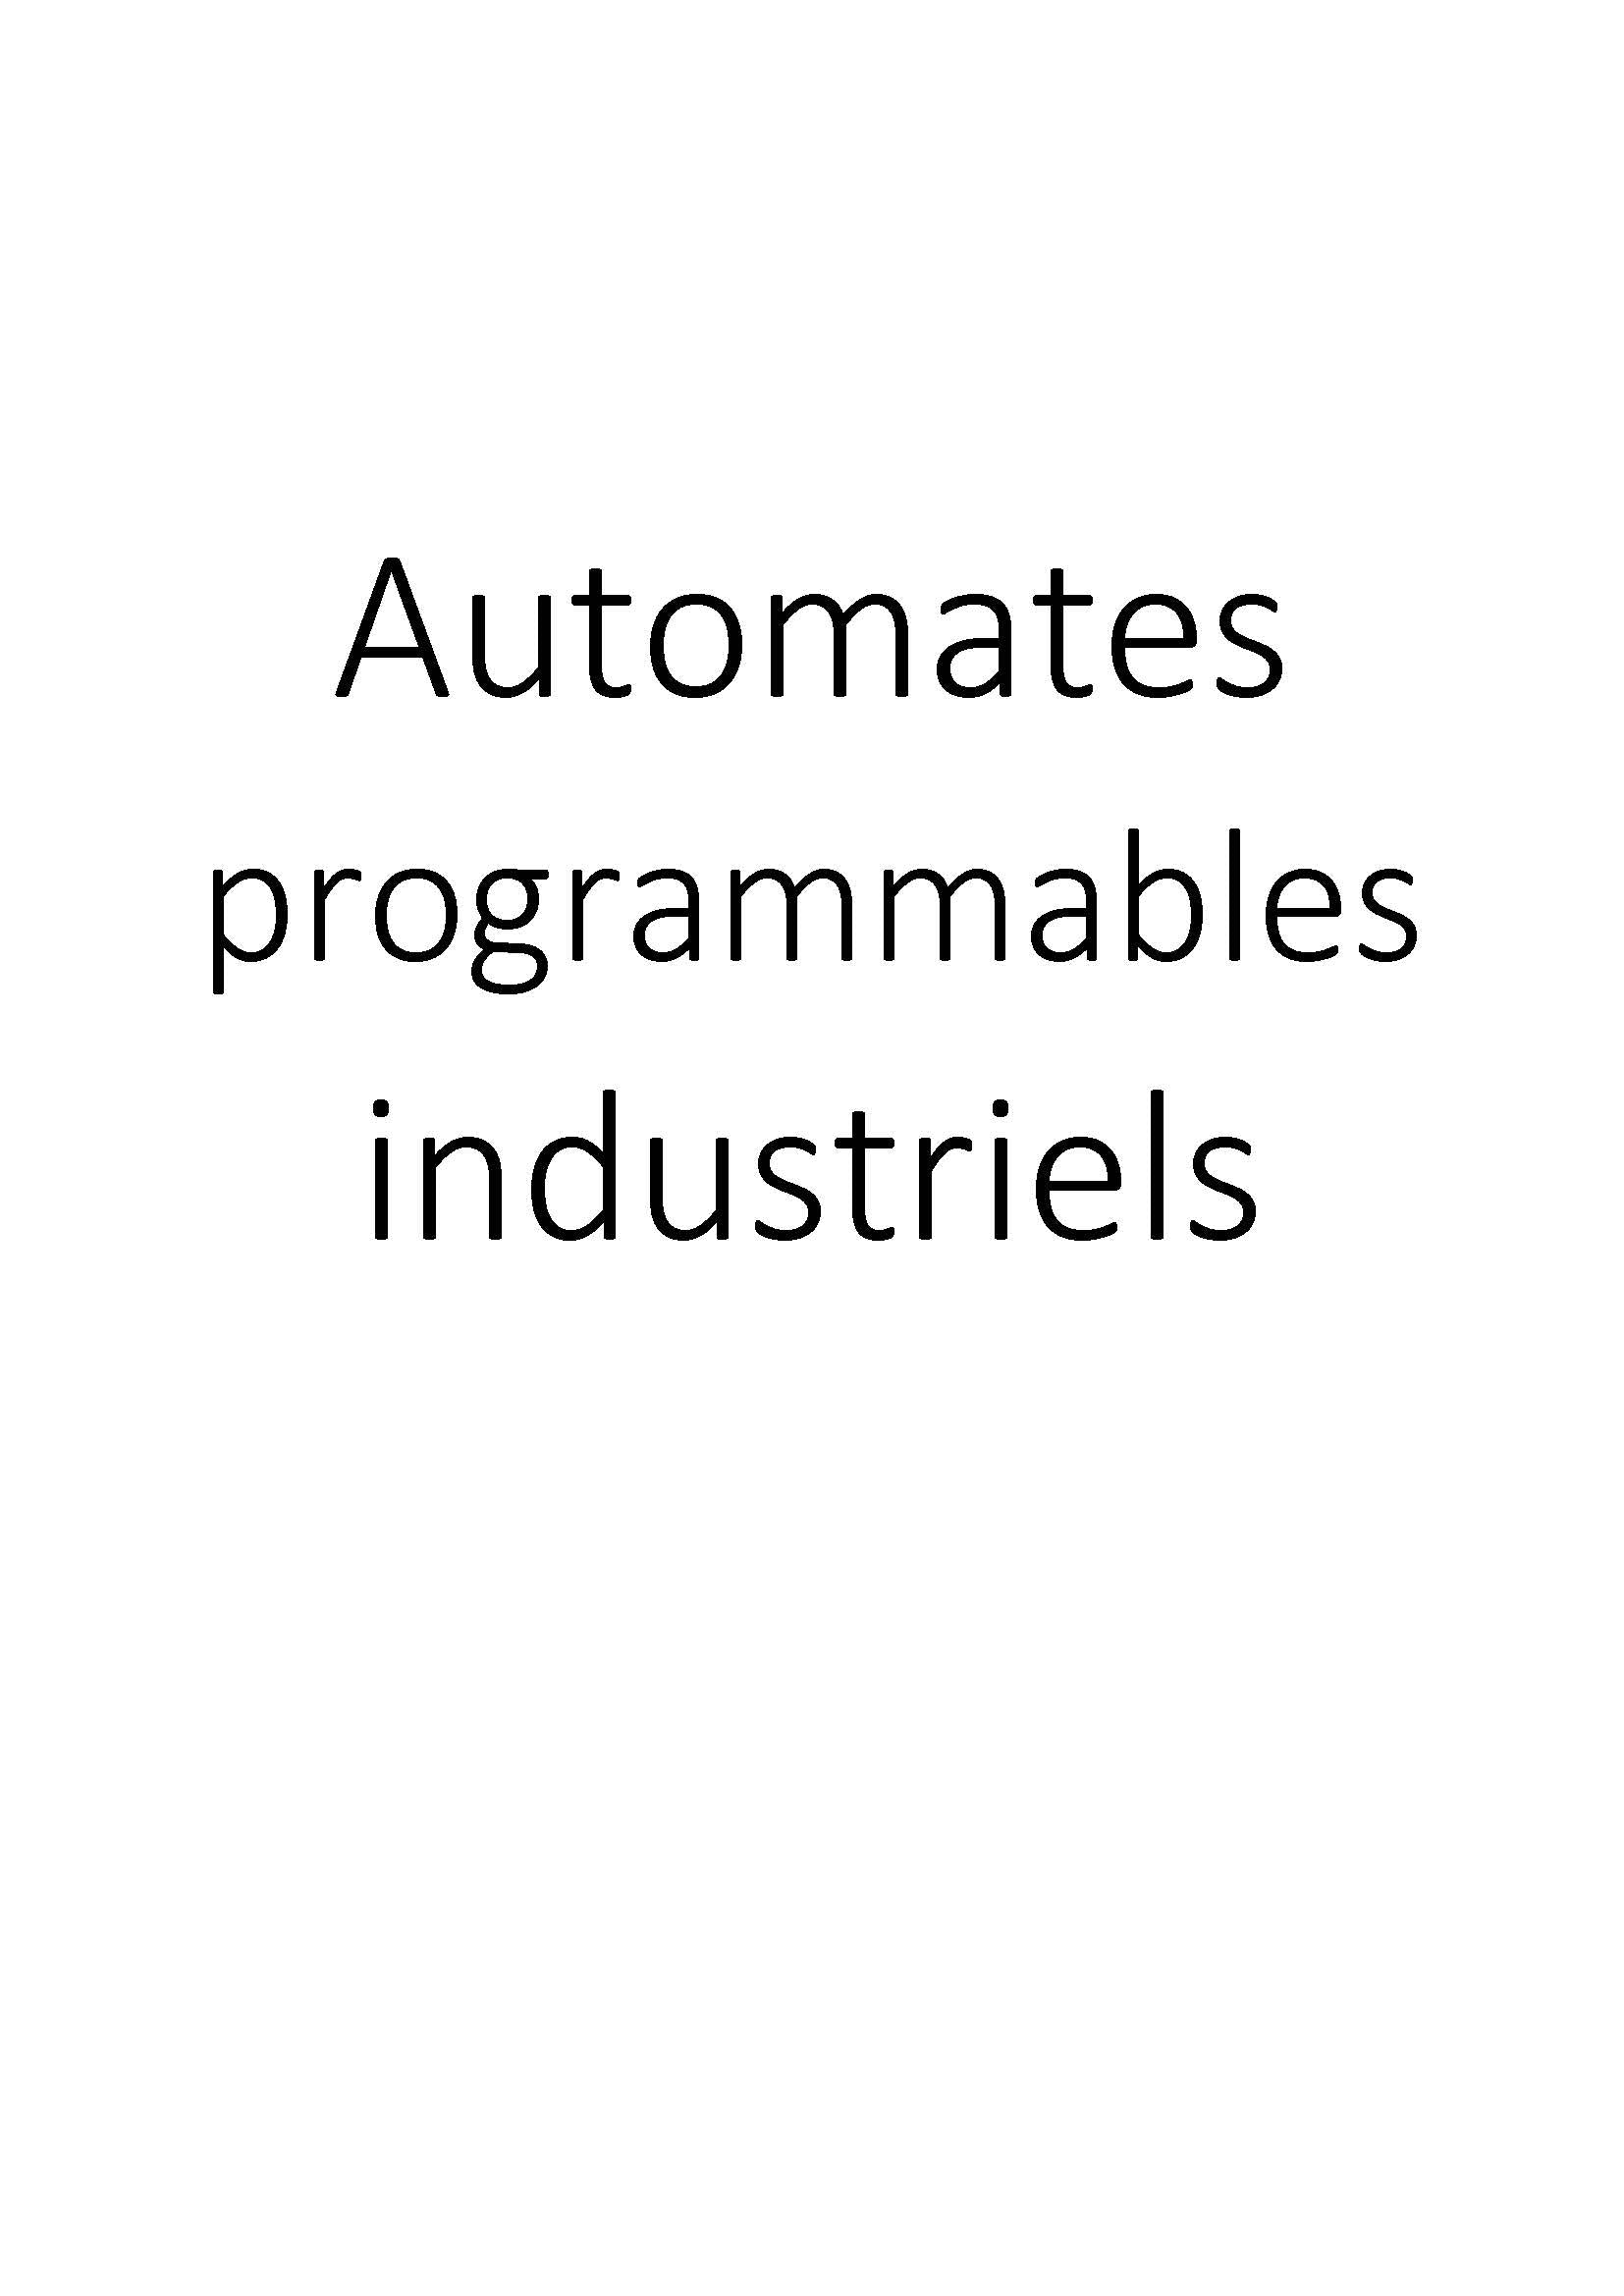 Automates programmables industriels clicktofournisseur.com